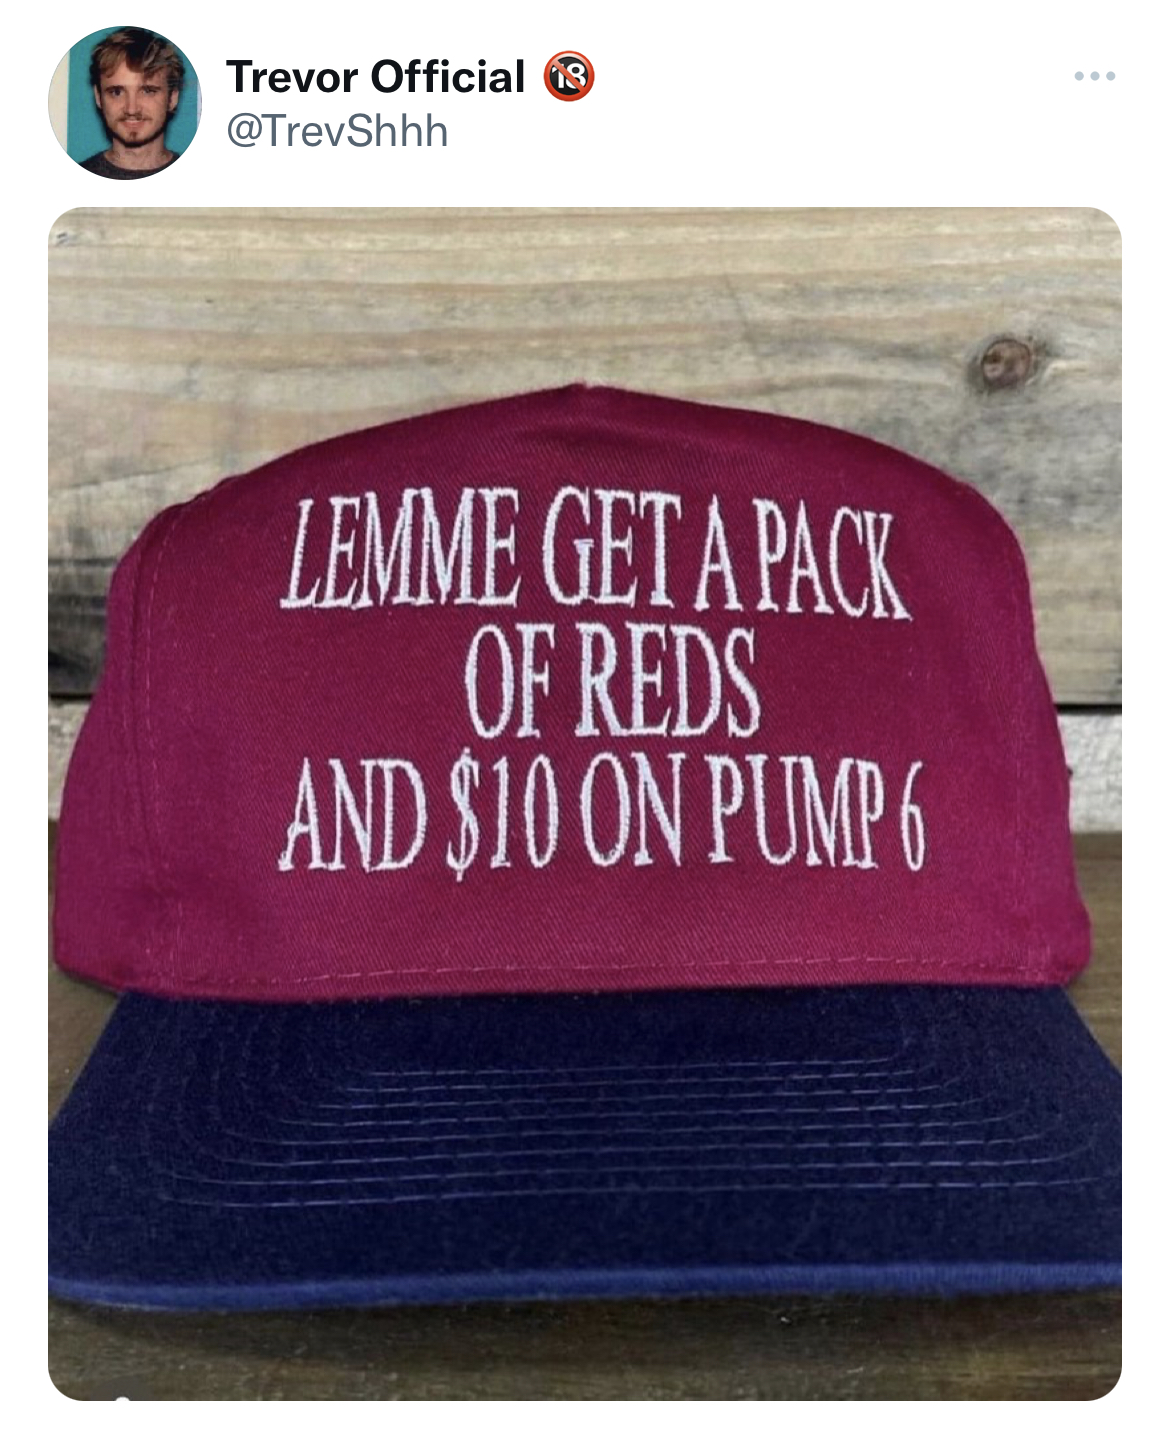 funny tweets - lemme get a pack of reds - Trevor Official 3 Lemme Get A Pack Of Reds And $10 On Pump 6